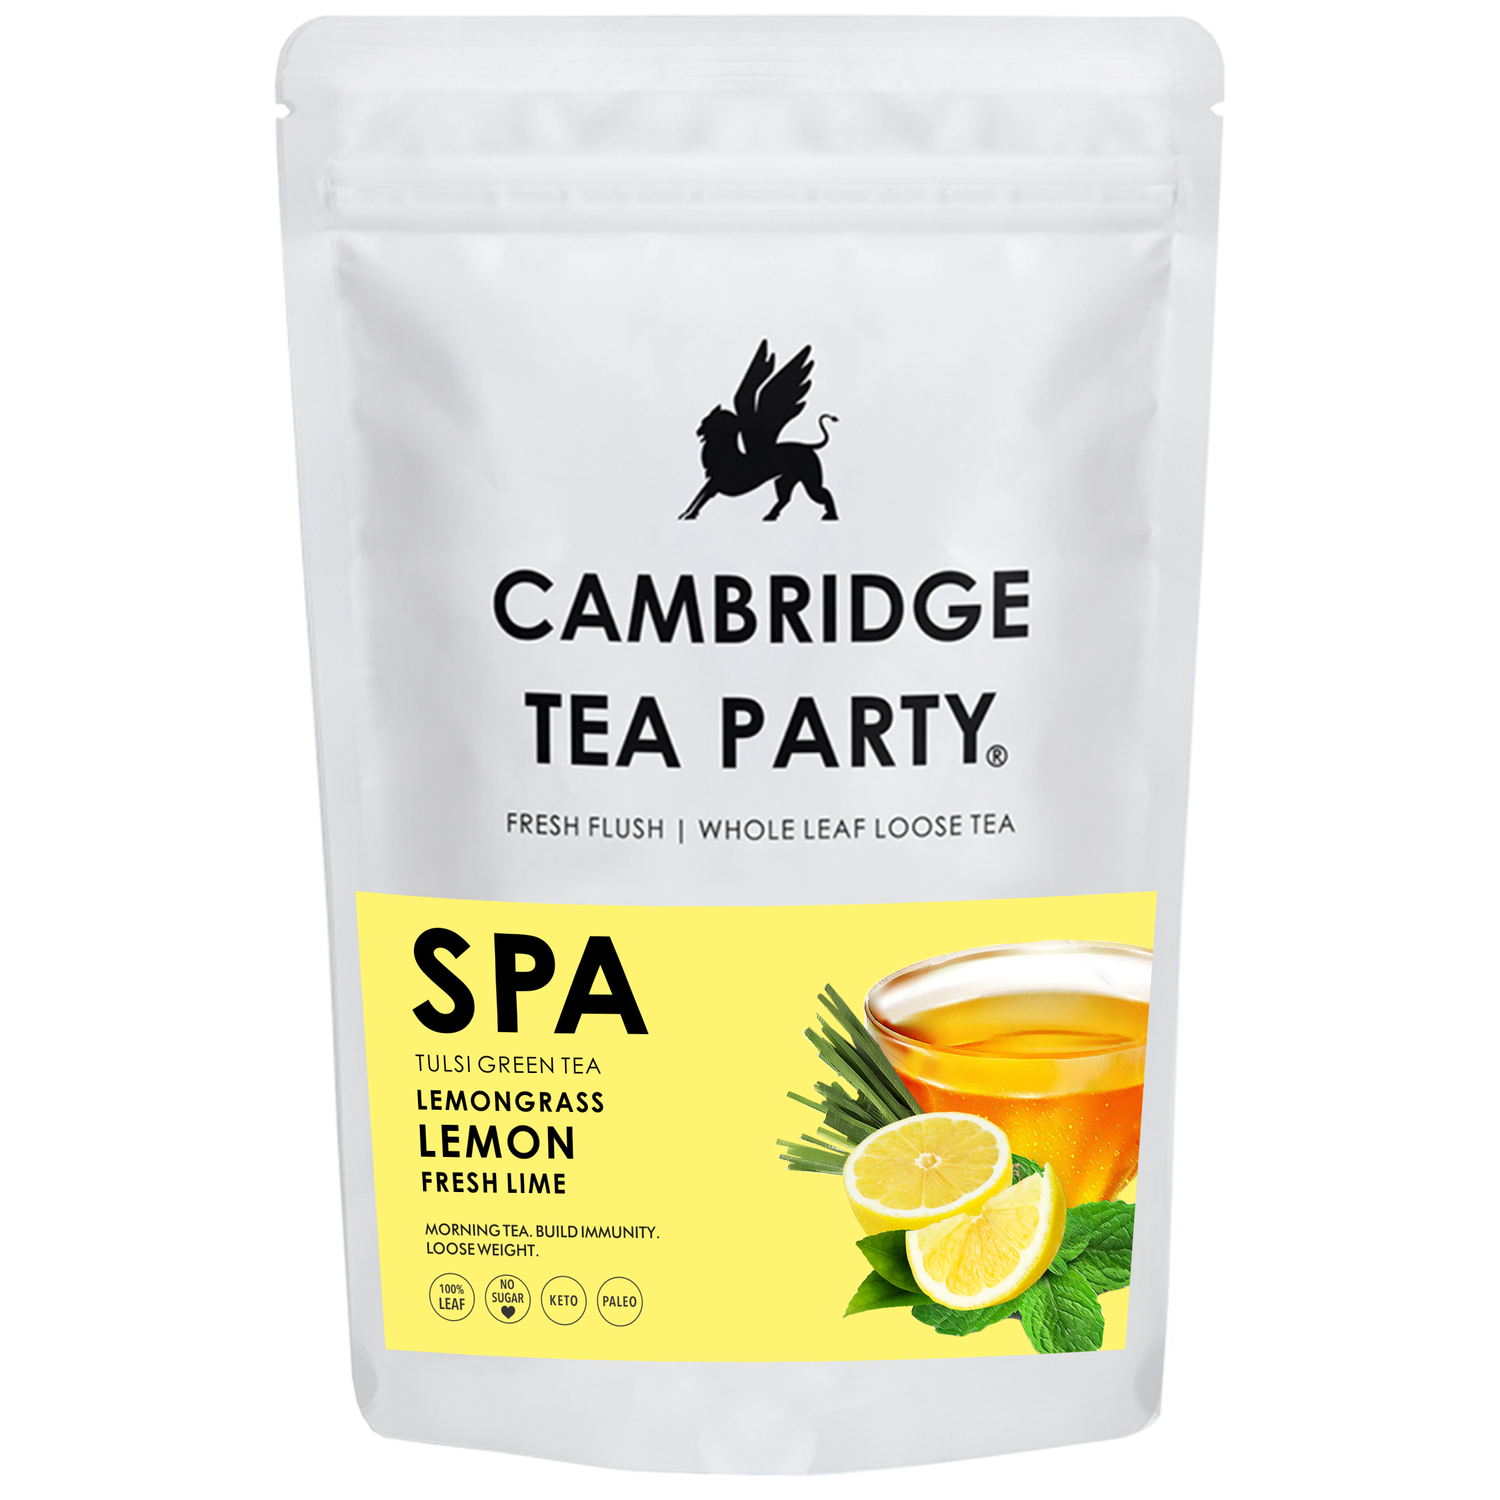 Spa, Lemon Lime Lemongrass Green Tea, Whole Leaf Loose Tea, 150g 